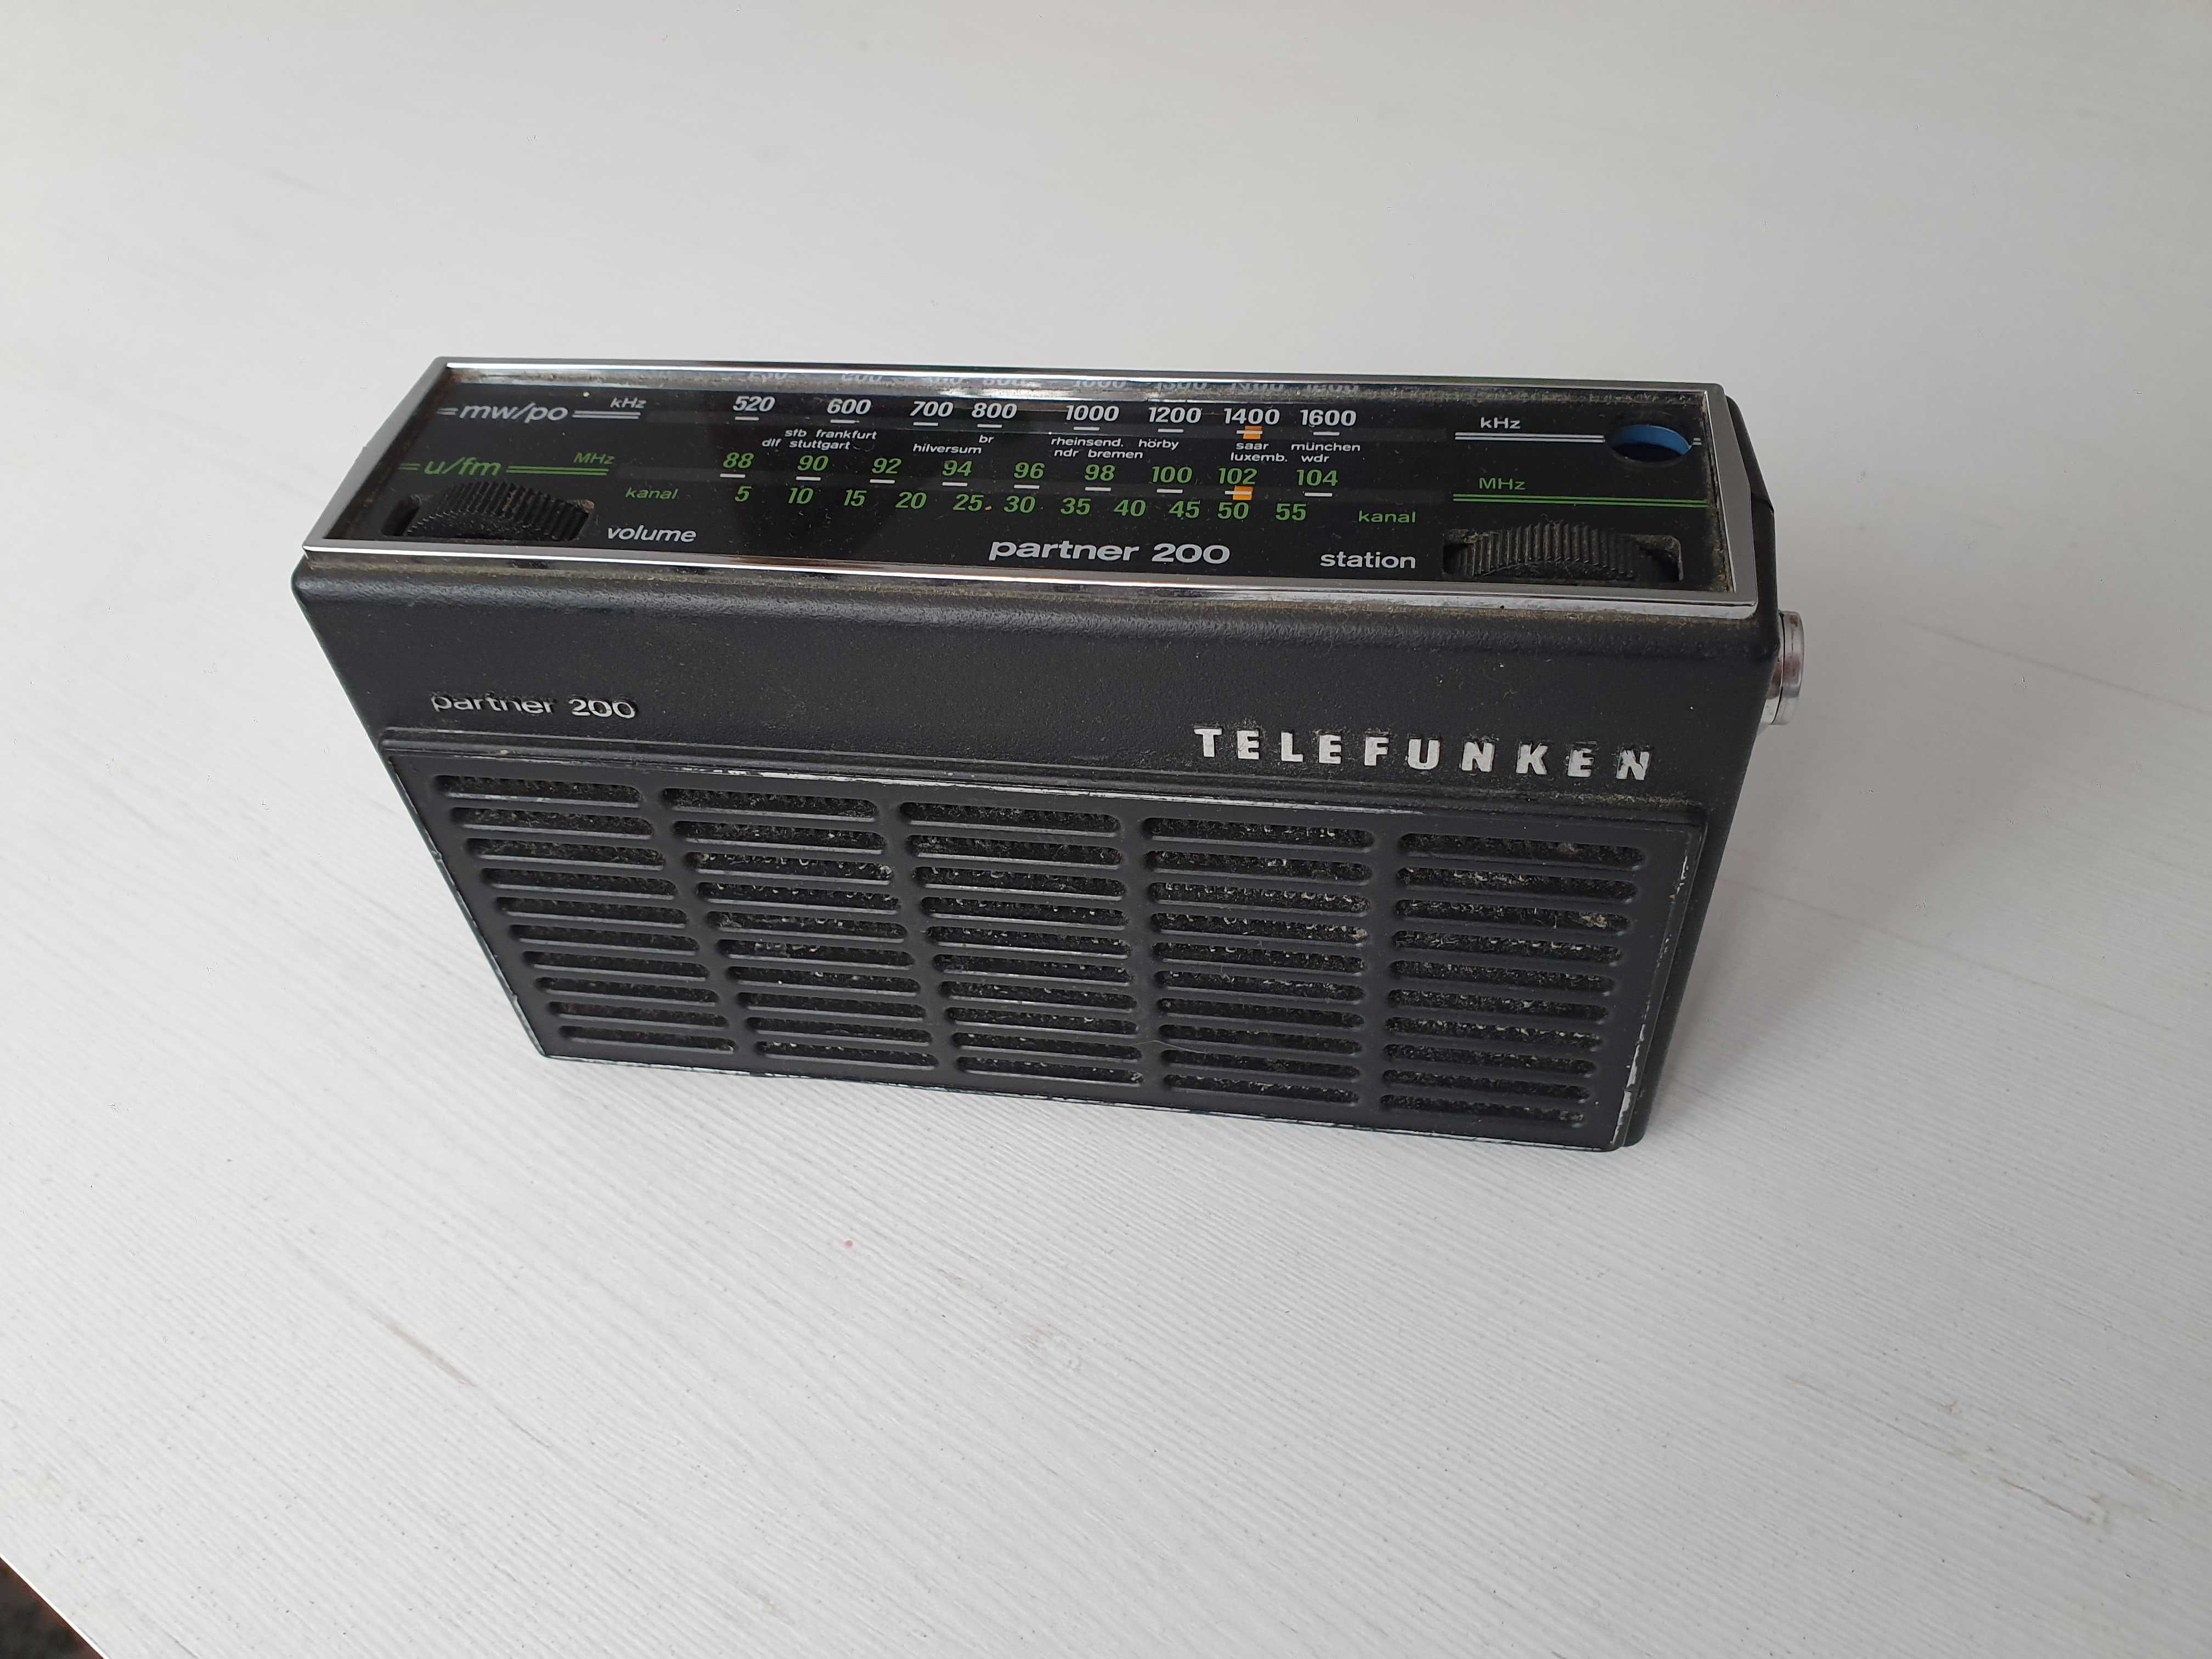 Stare zabytkowe radio telefunken partner 200 vintage